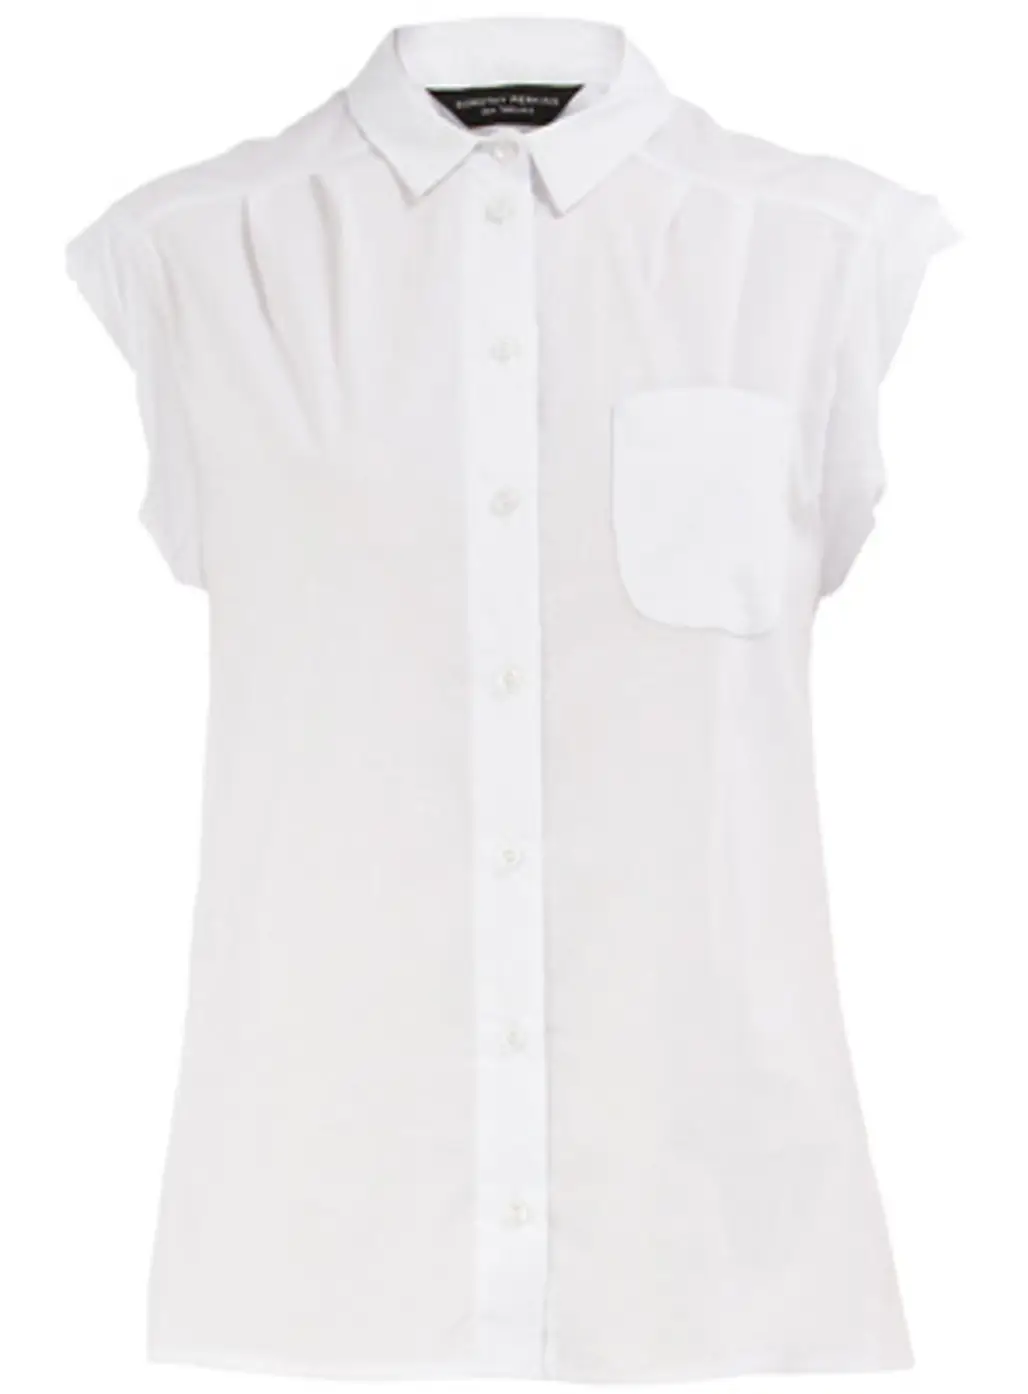 White Boxy Shirt